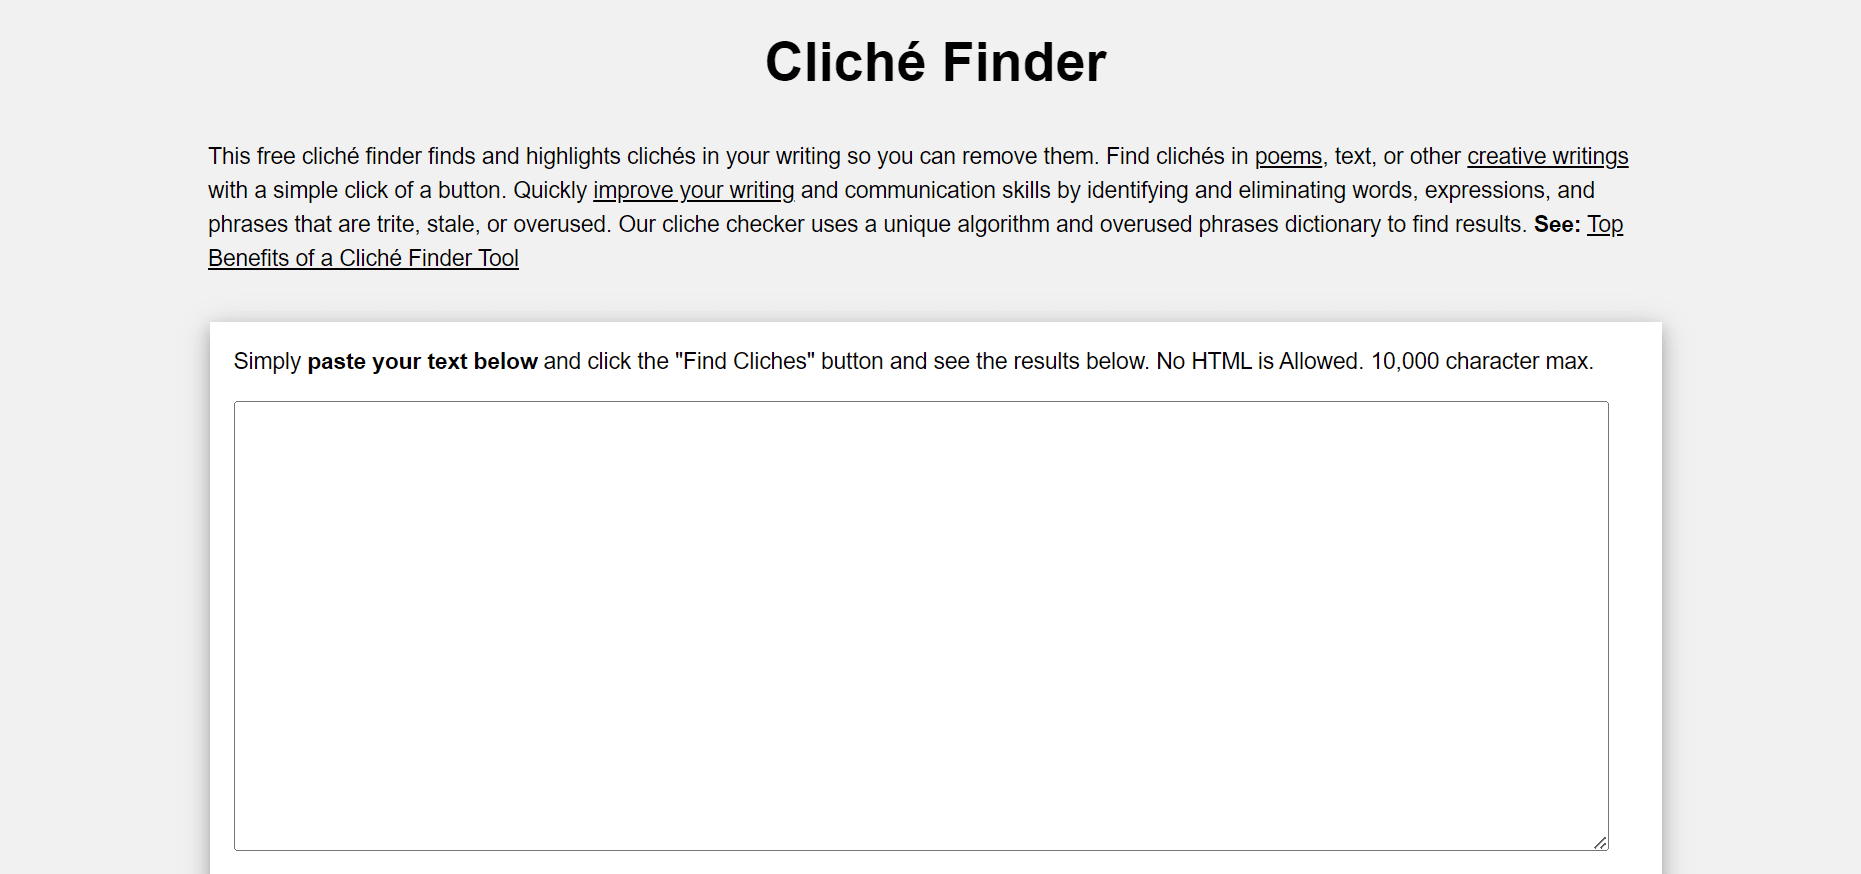 Cliché Finder